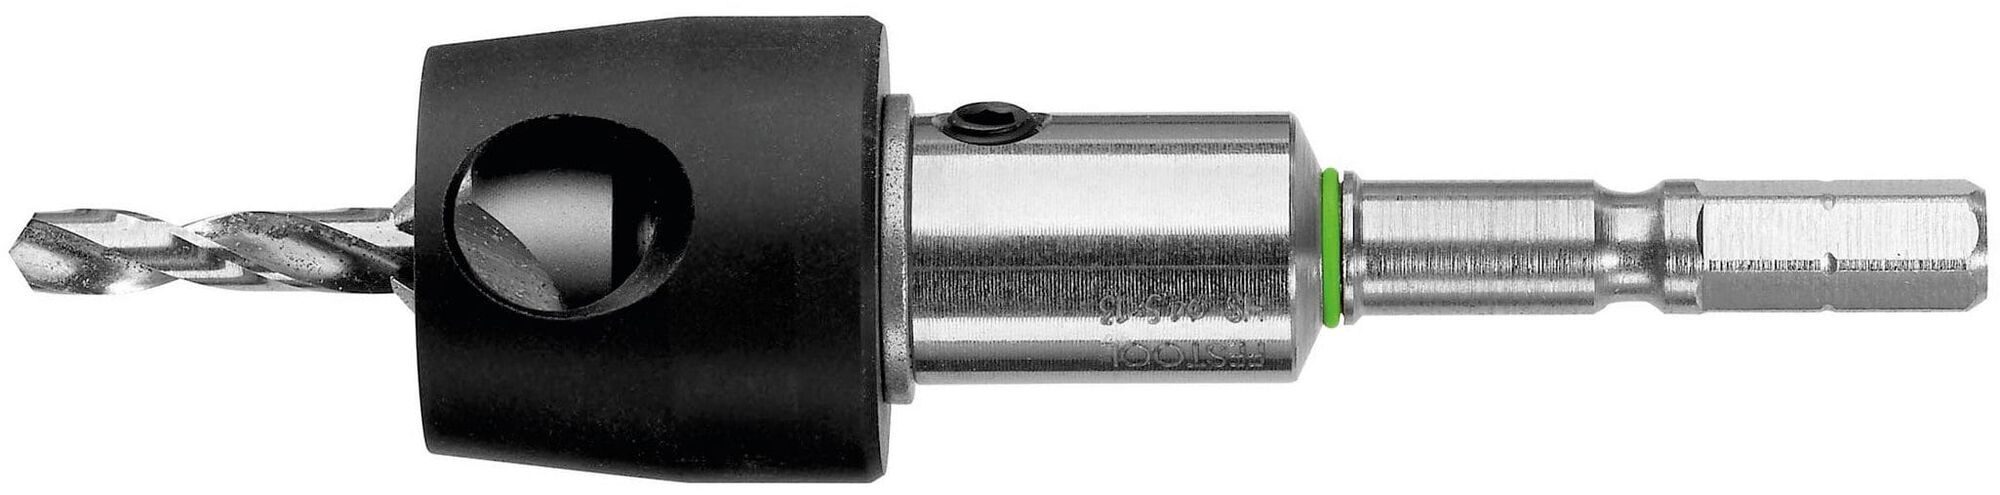 Сверло-зенкер с ограничителем глубины Festool BSTA HS D5,0 CE BSTA HS D 5 CE